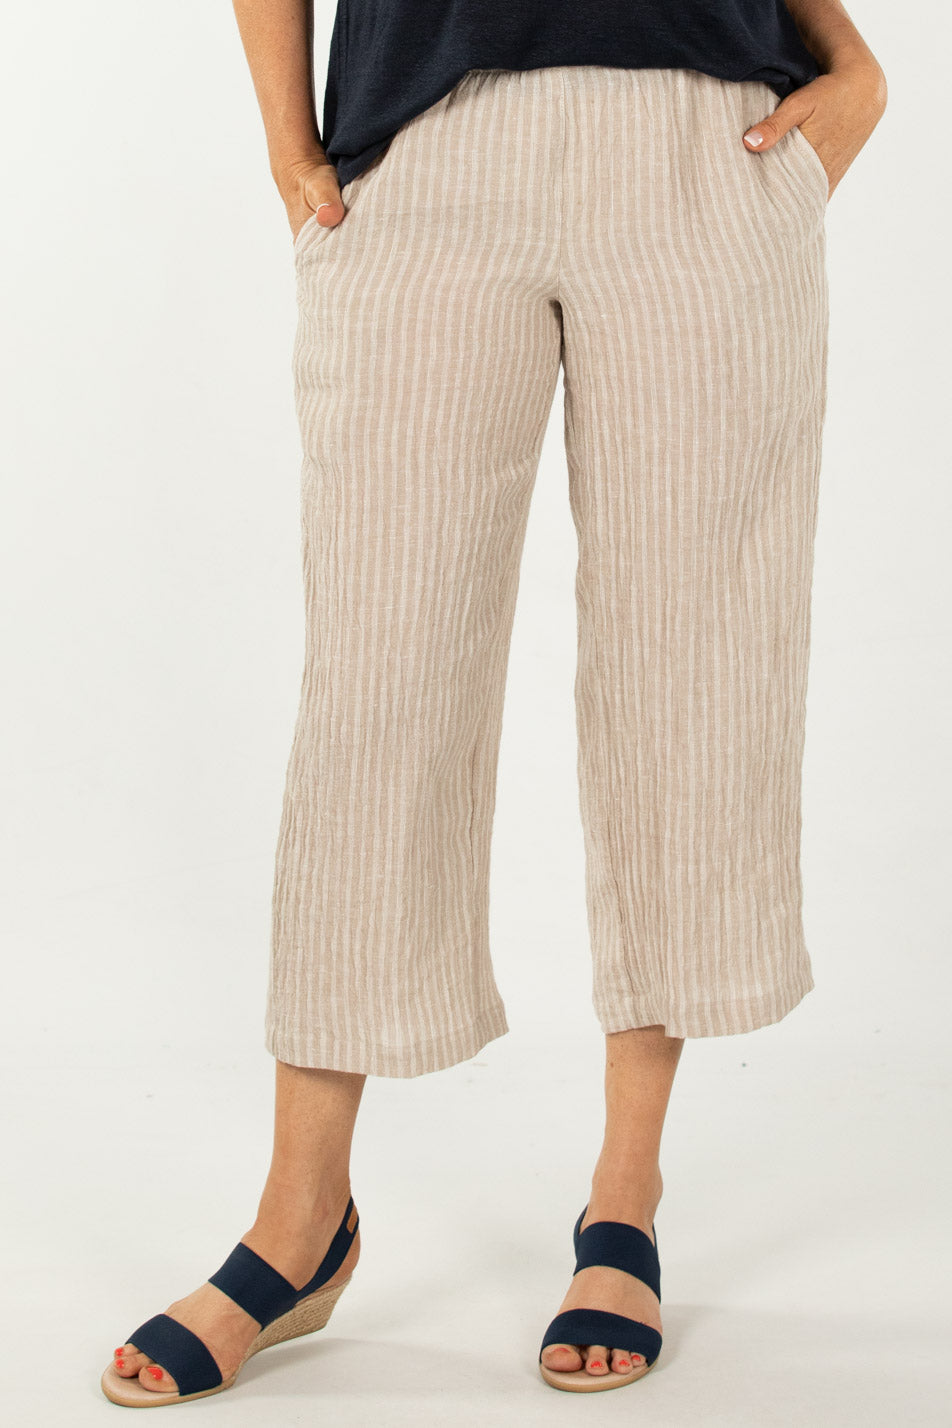 Shop Corsica Crop Stripe Linen Pant in Sand/White – Fella Hamilton